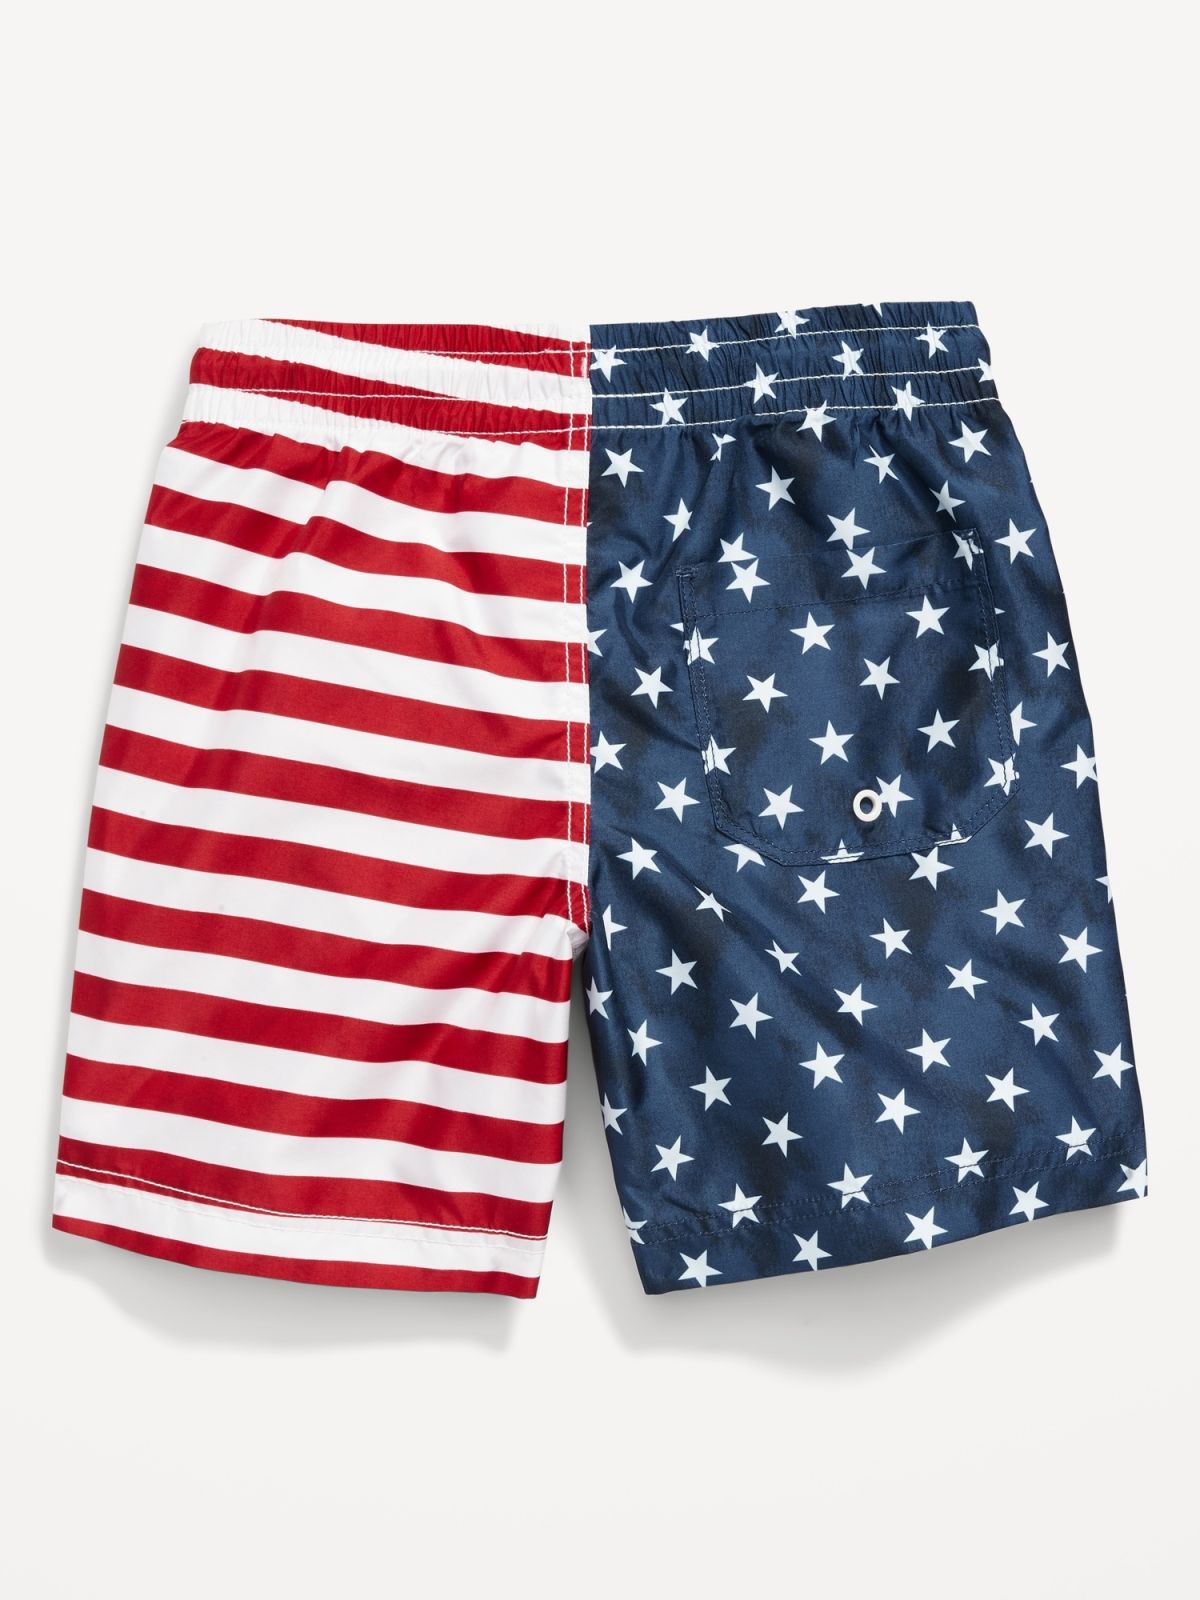  מכנסי בגד ים בהדפס דגל ארה"ב / בנים של OLD NAVY